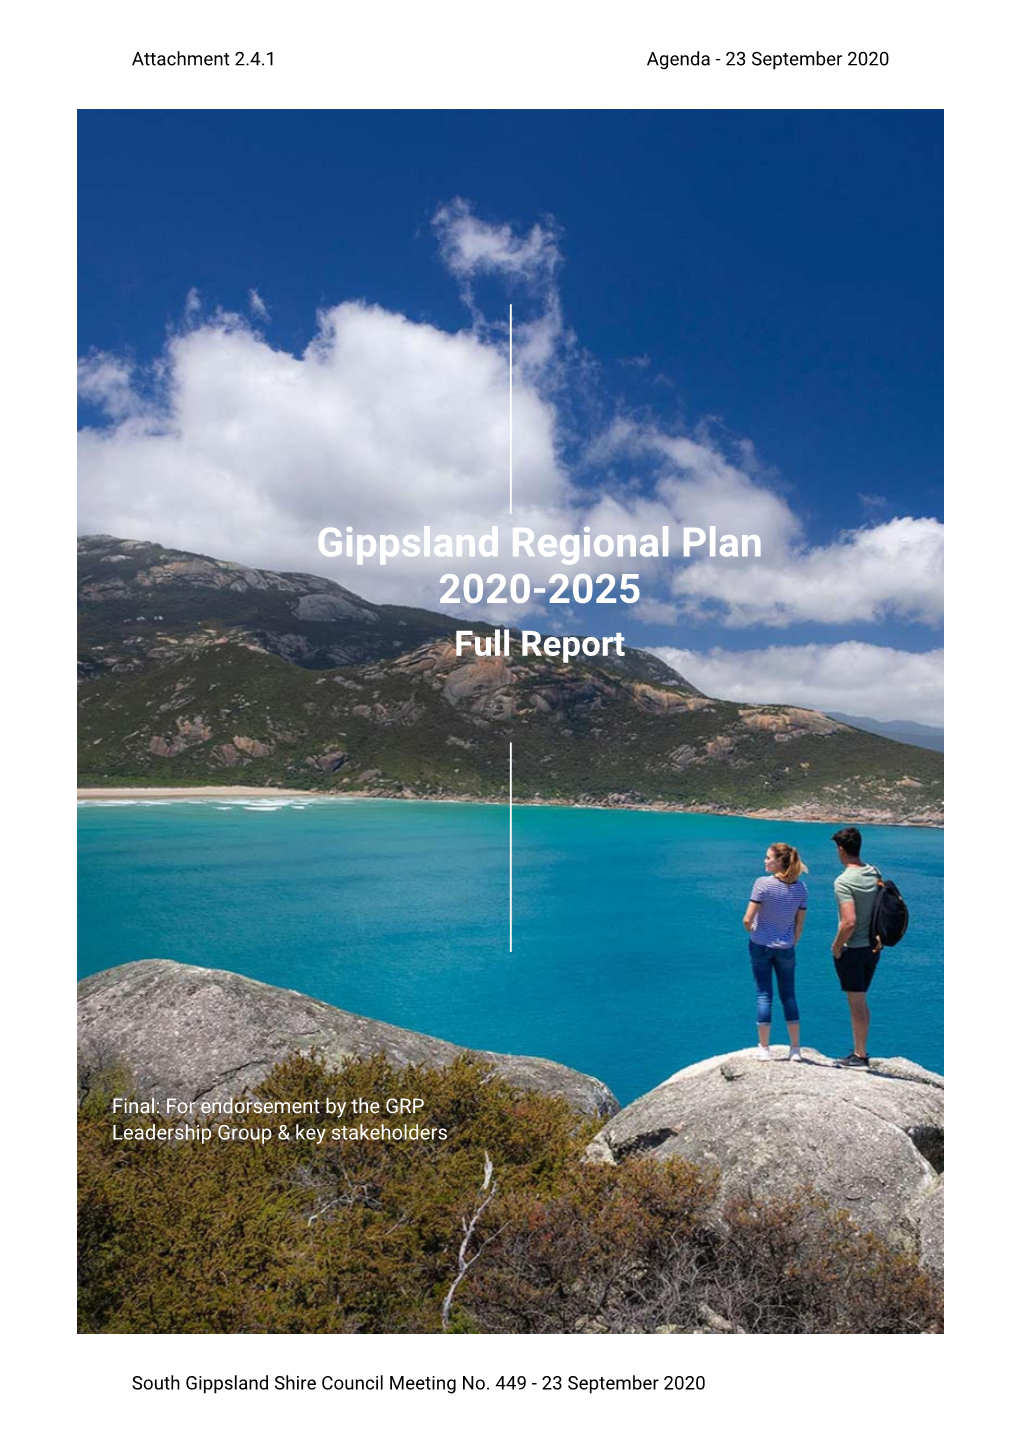 Gippsland Regional Plan 2020-2025 Full Report